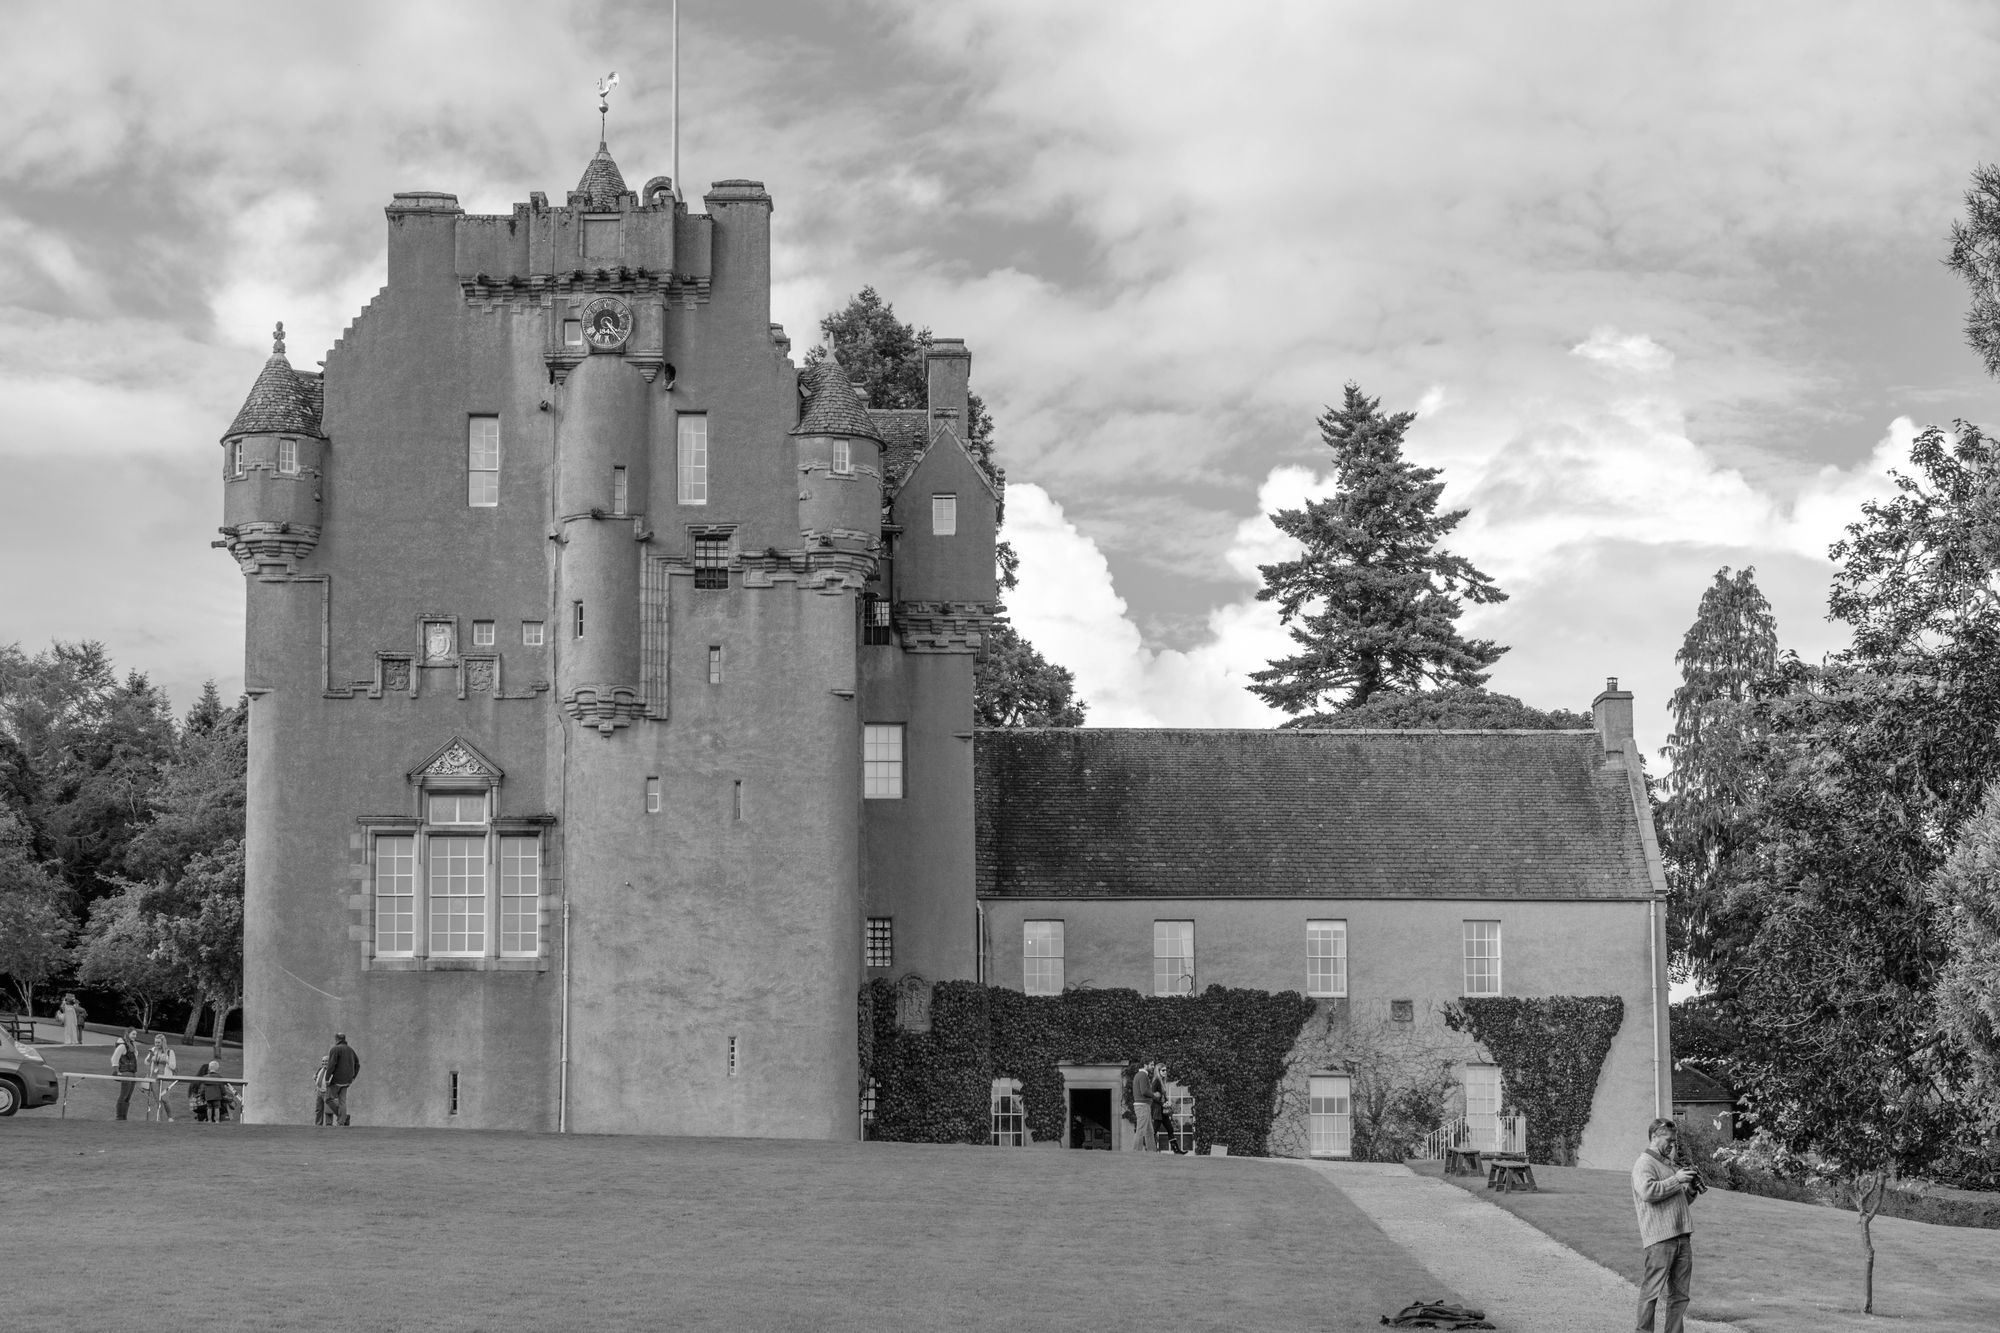 Crathes Castle Ghost Tours